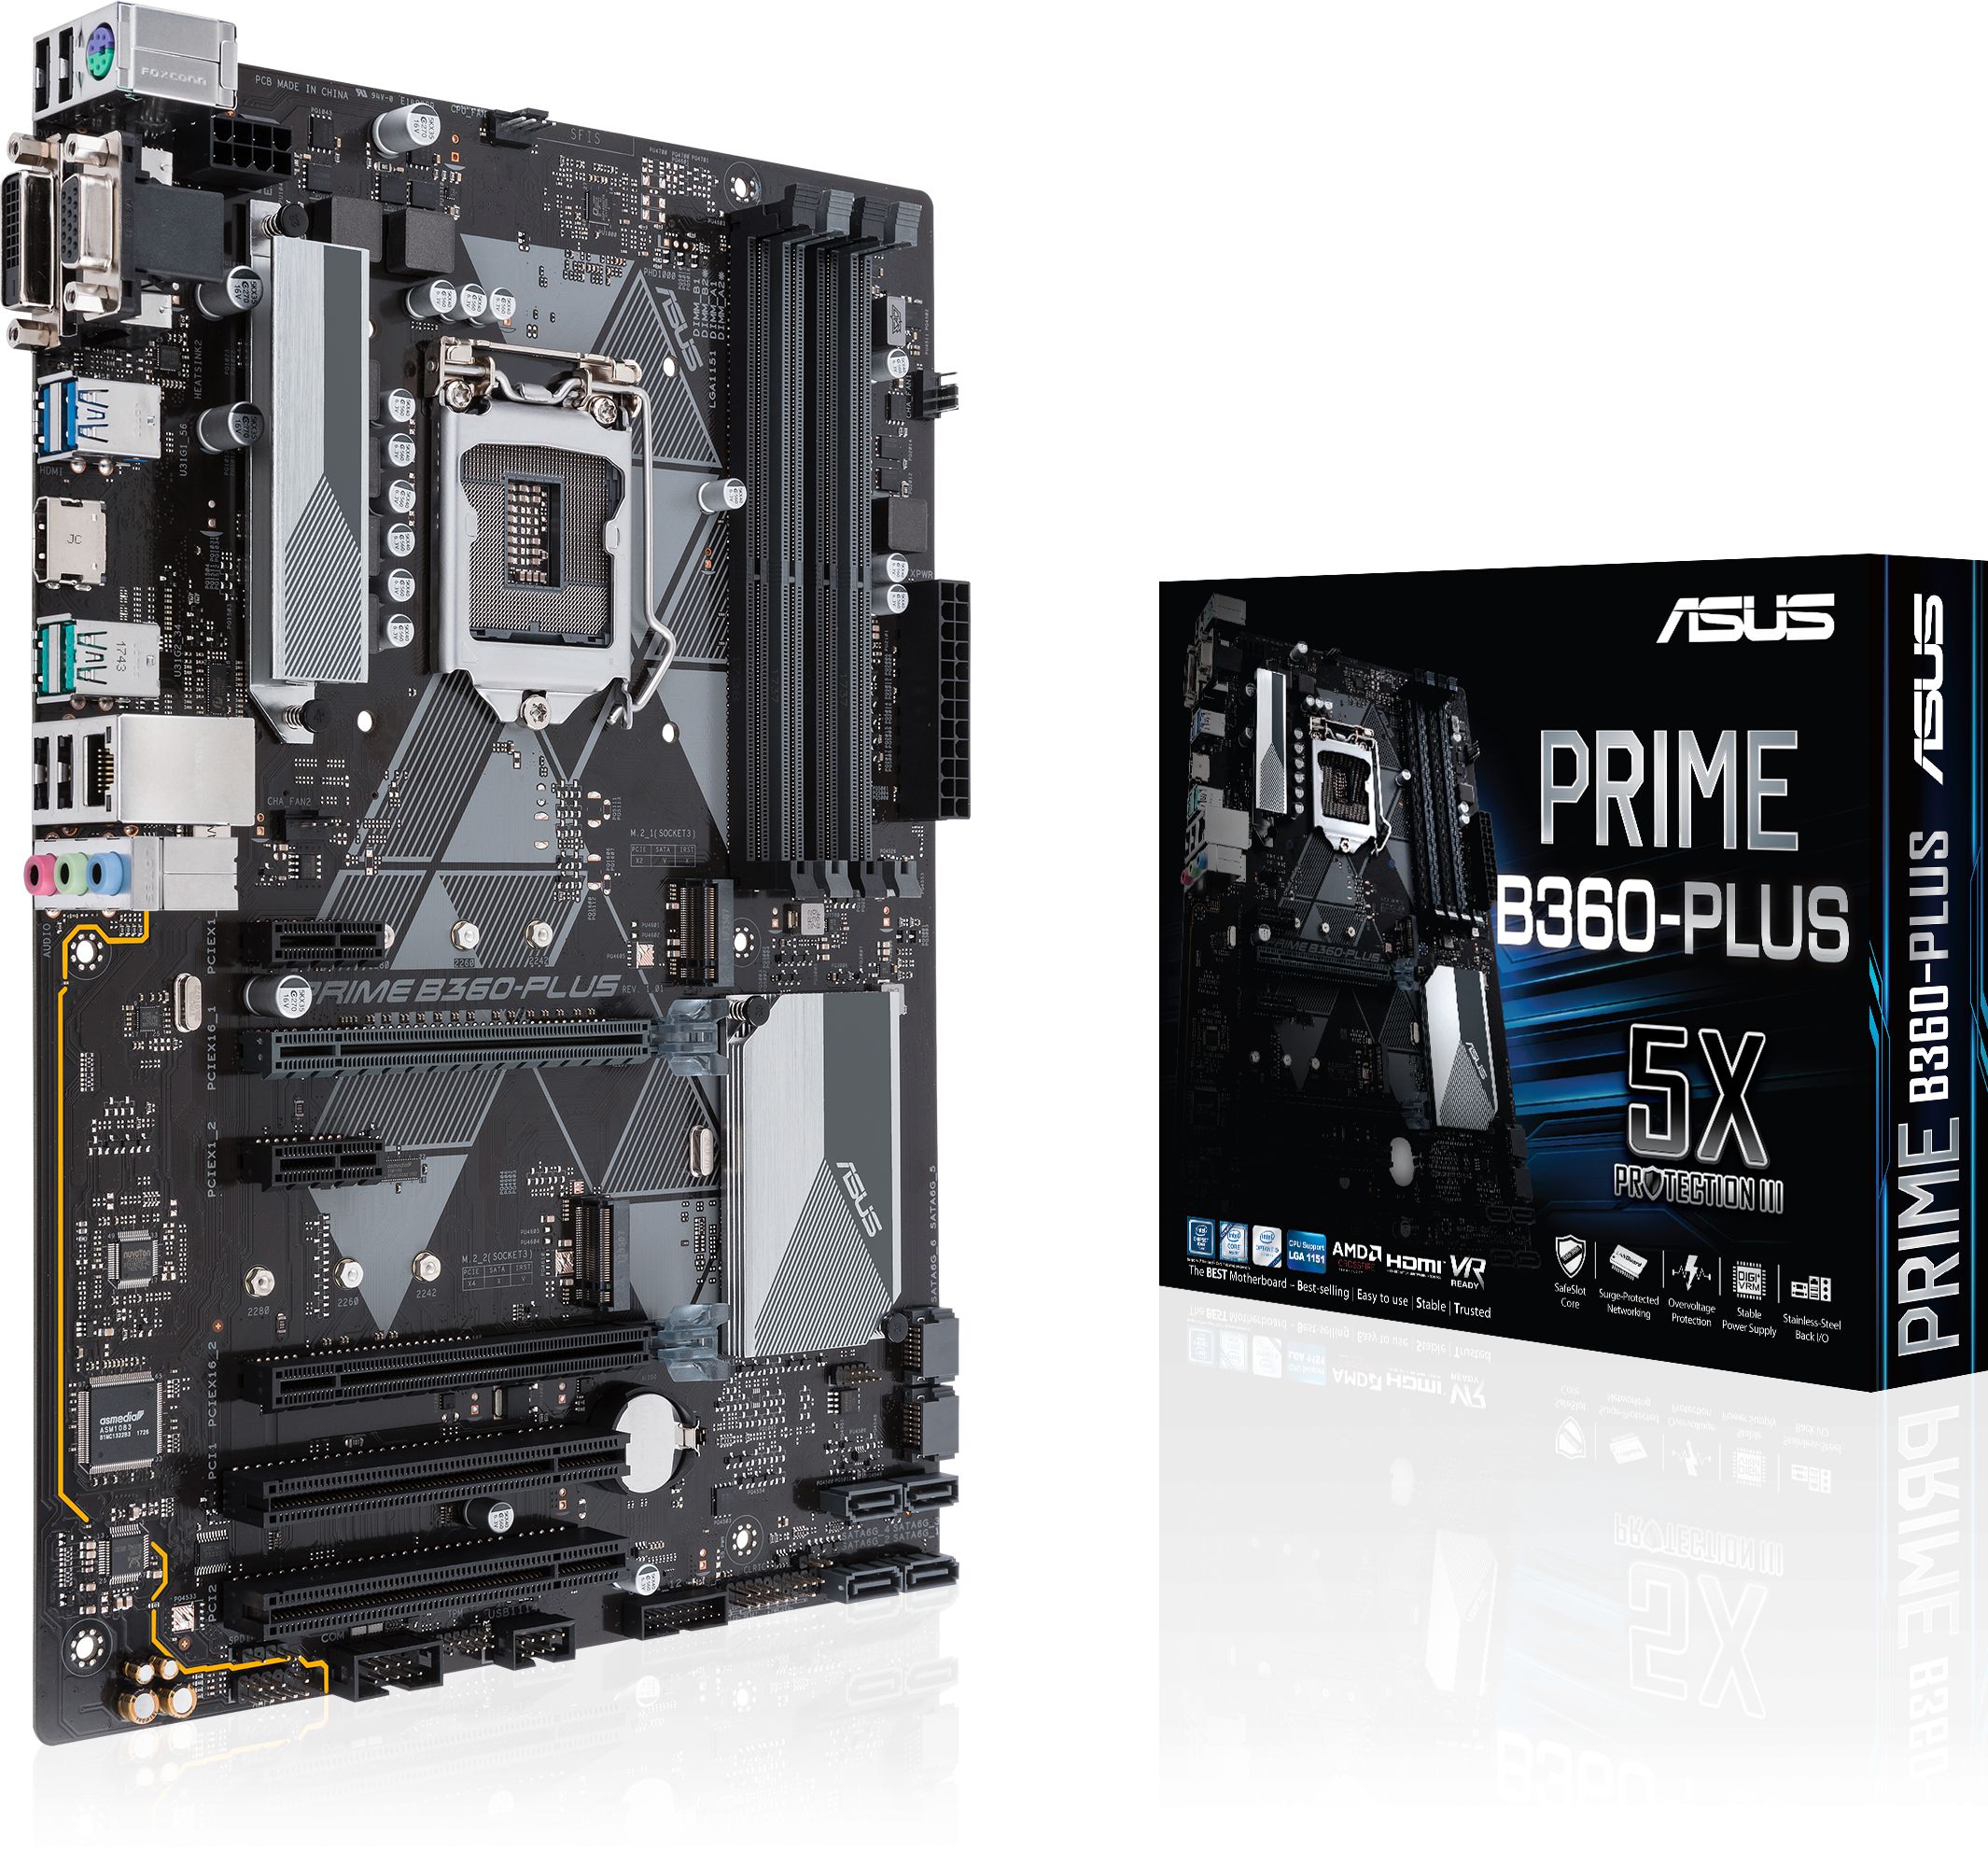 Asus Prime B360M-K Mainboard Sockel 1151 mATX, Intel B360, DDR4 Speicher, M.2, 6Gbit/s SATA, USB 3.1 Gen 2 